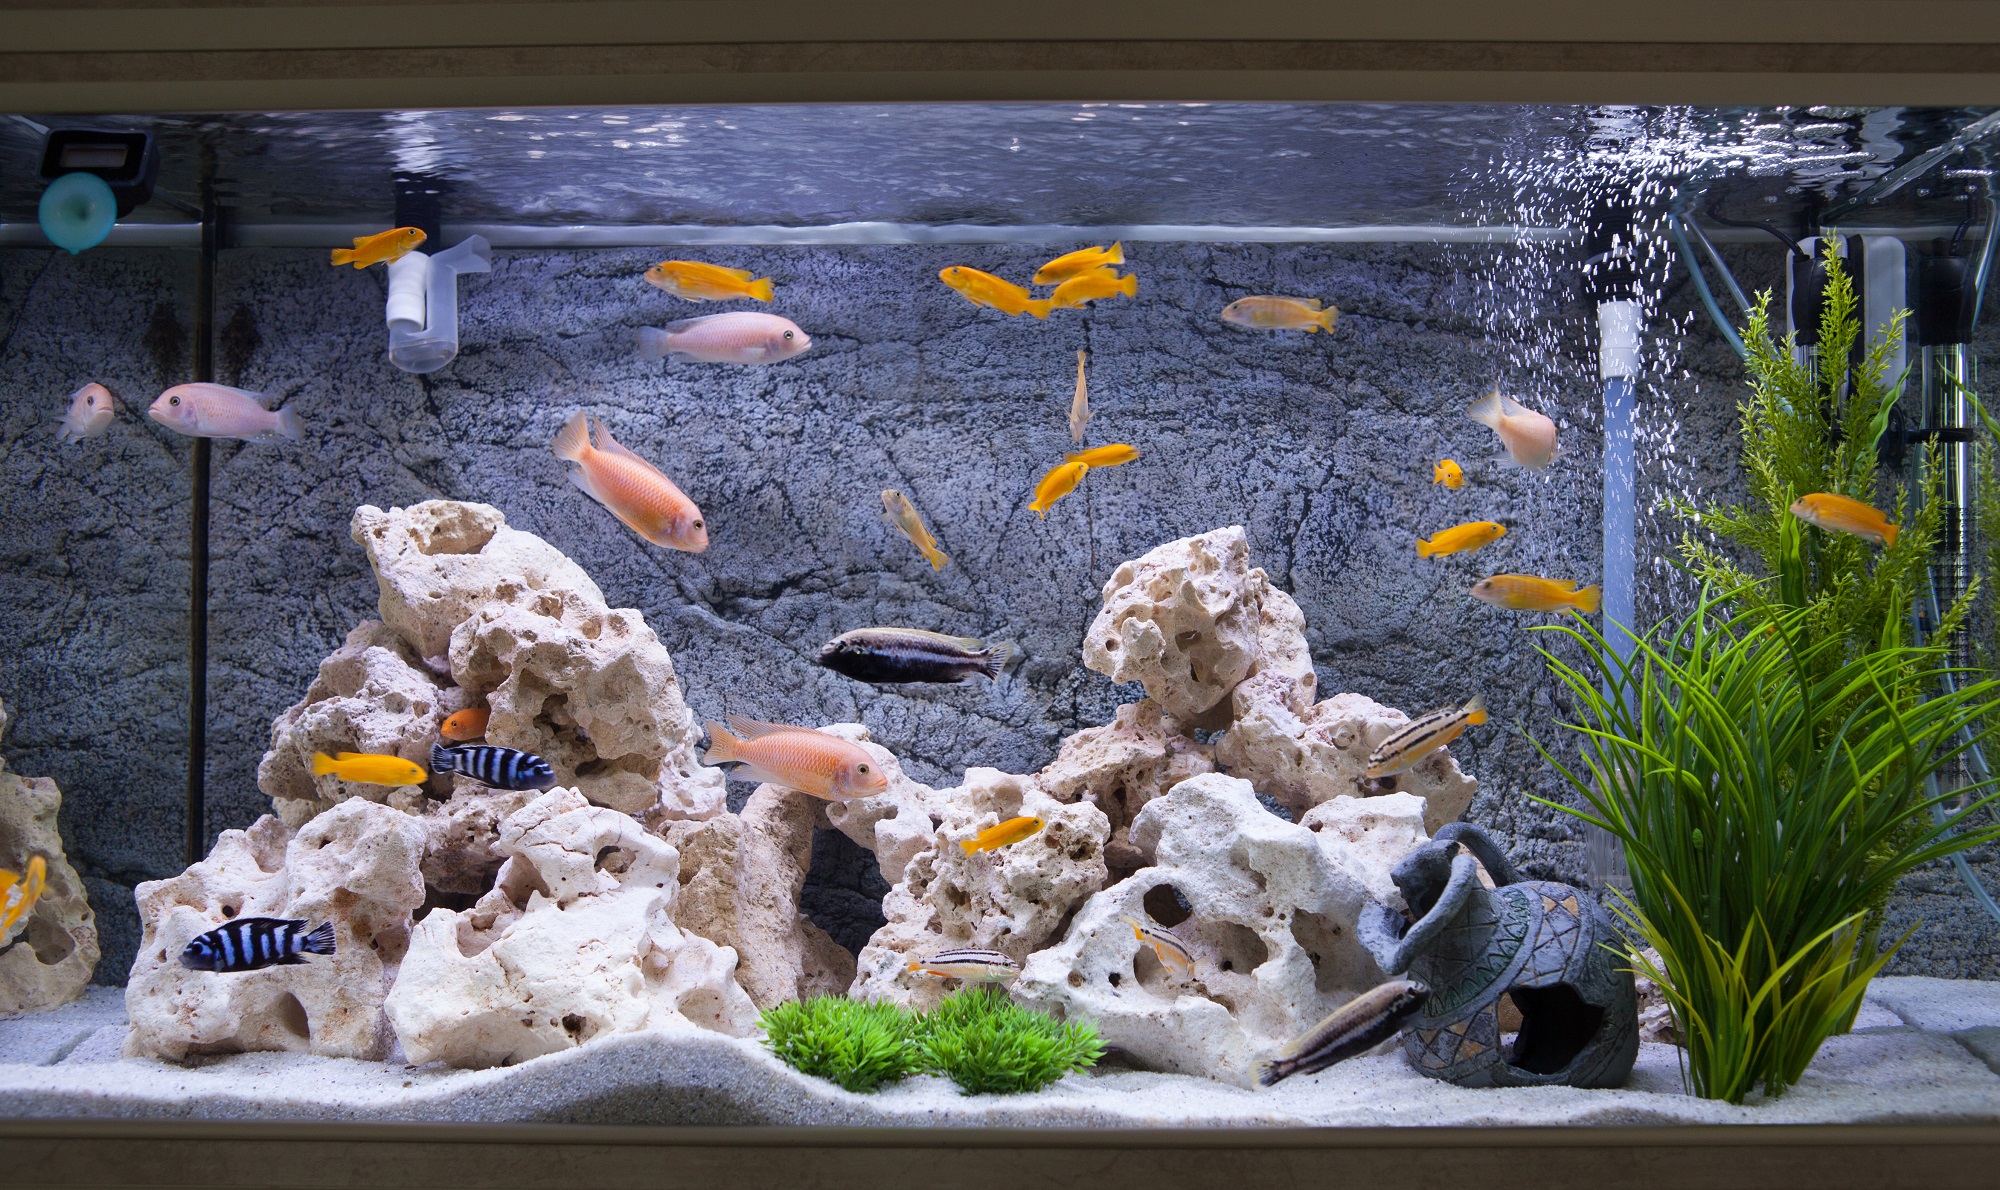 аквариум 90 литров сколько рыбок